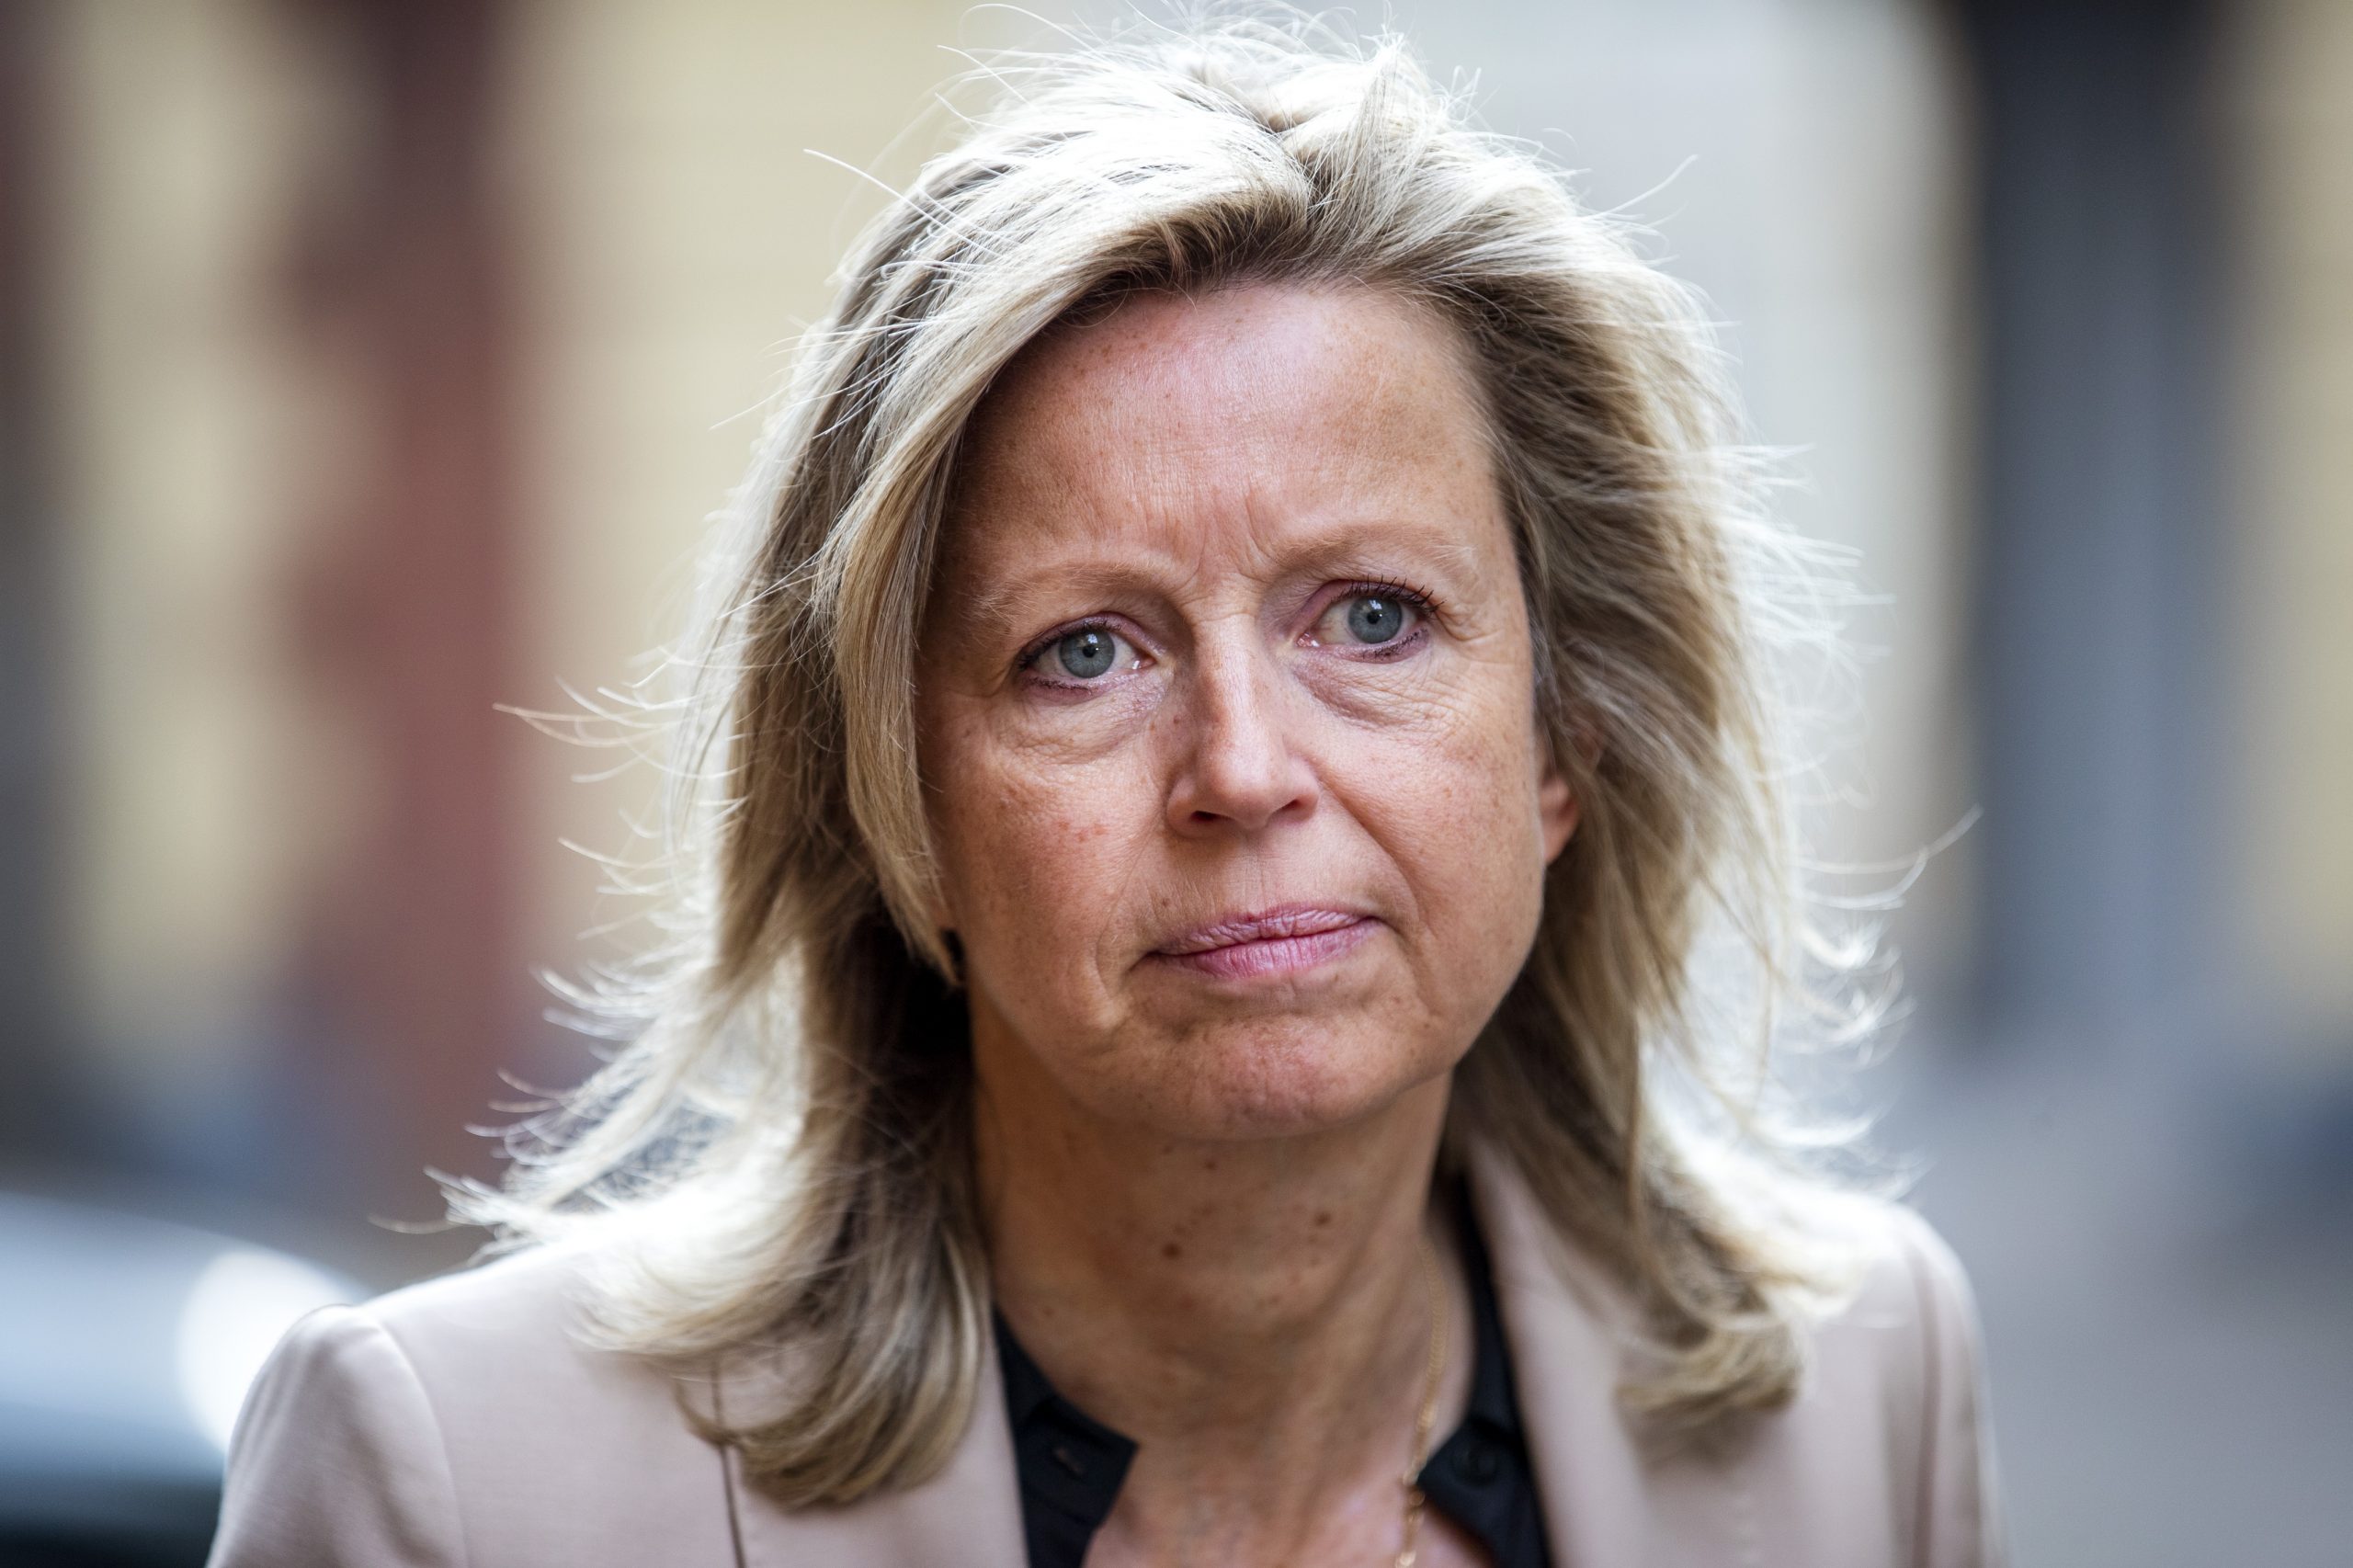 Kajsa Ollongren, minister van Binnenlandse Zaken